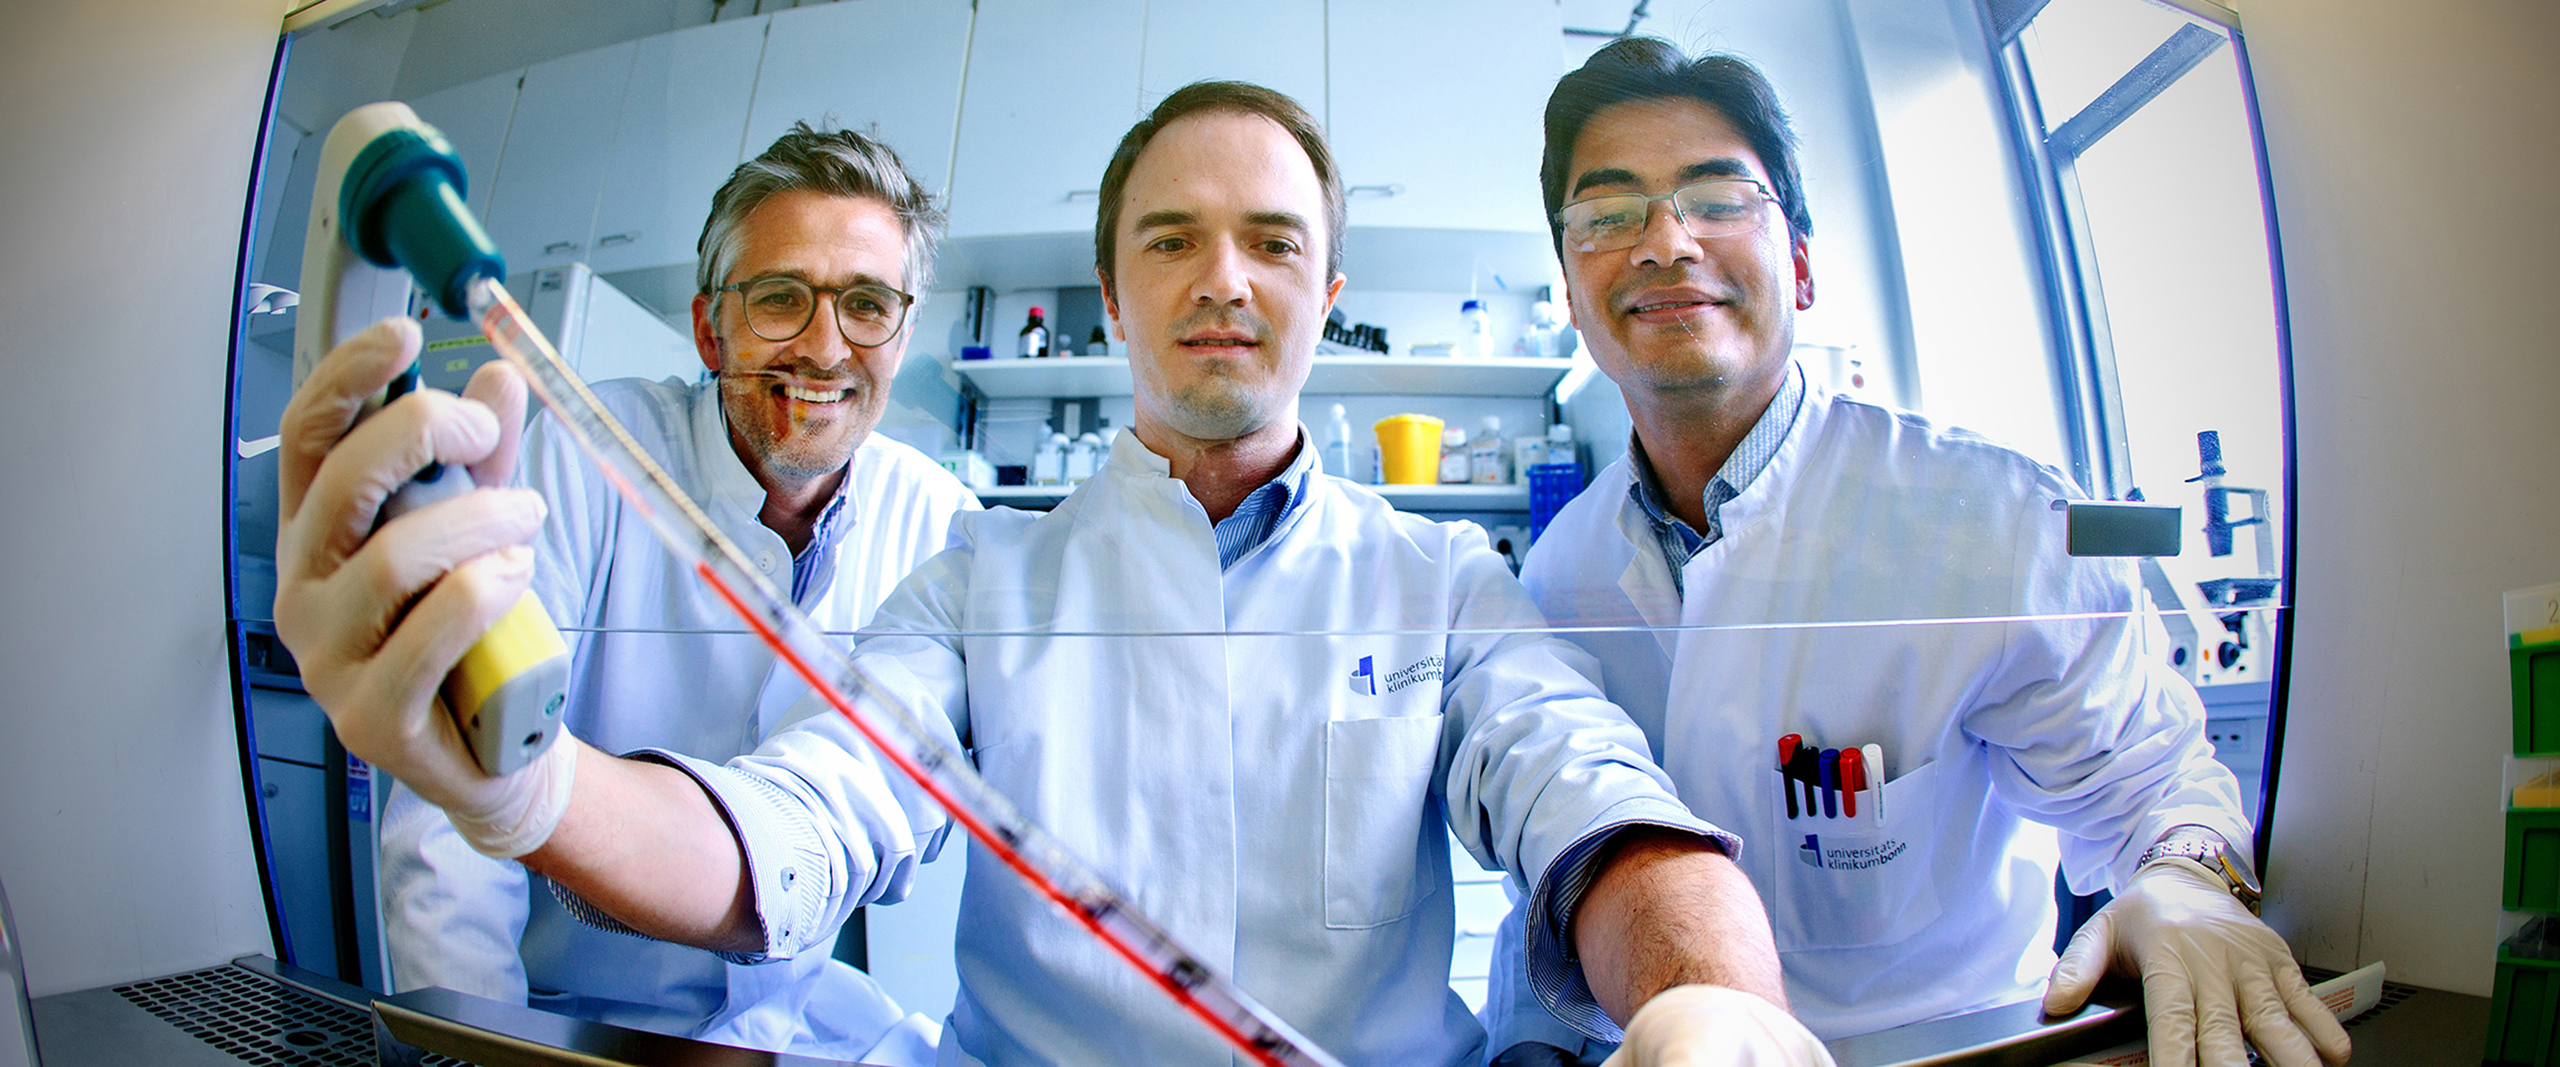 Andreas Zietzer (Mitte), Felix Jansen (links) und Rabiul Hosen (rechts) vom Herzzentrum des Universitätsklinikums Bonn bei der Arbeit an einer sterilen Kulturbank